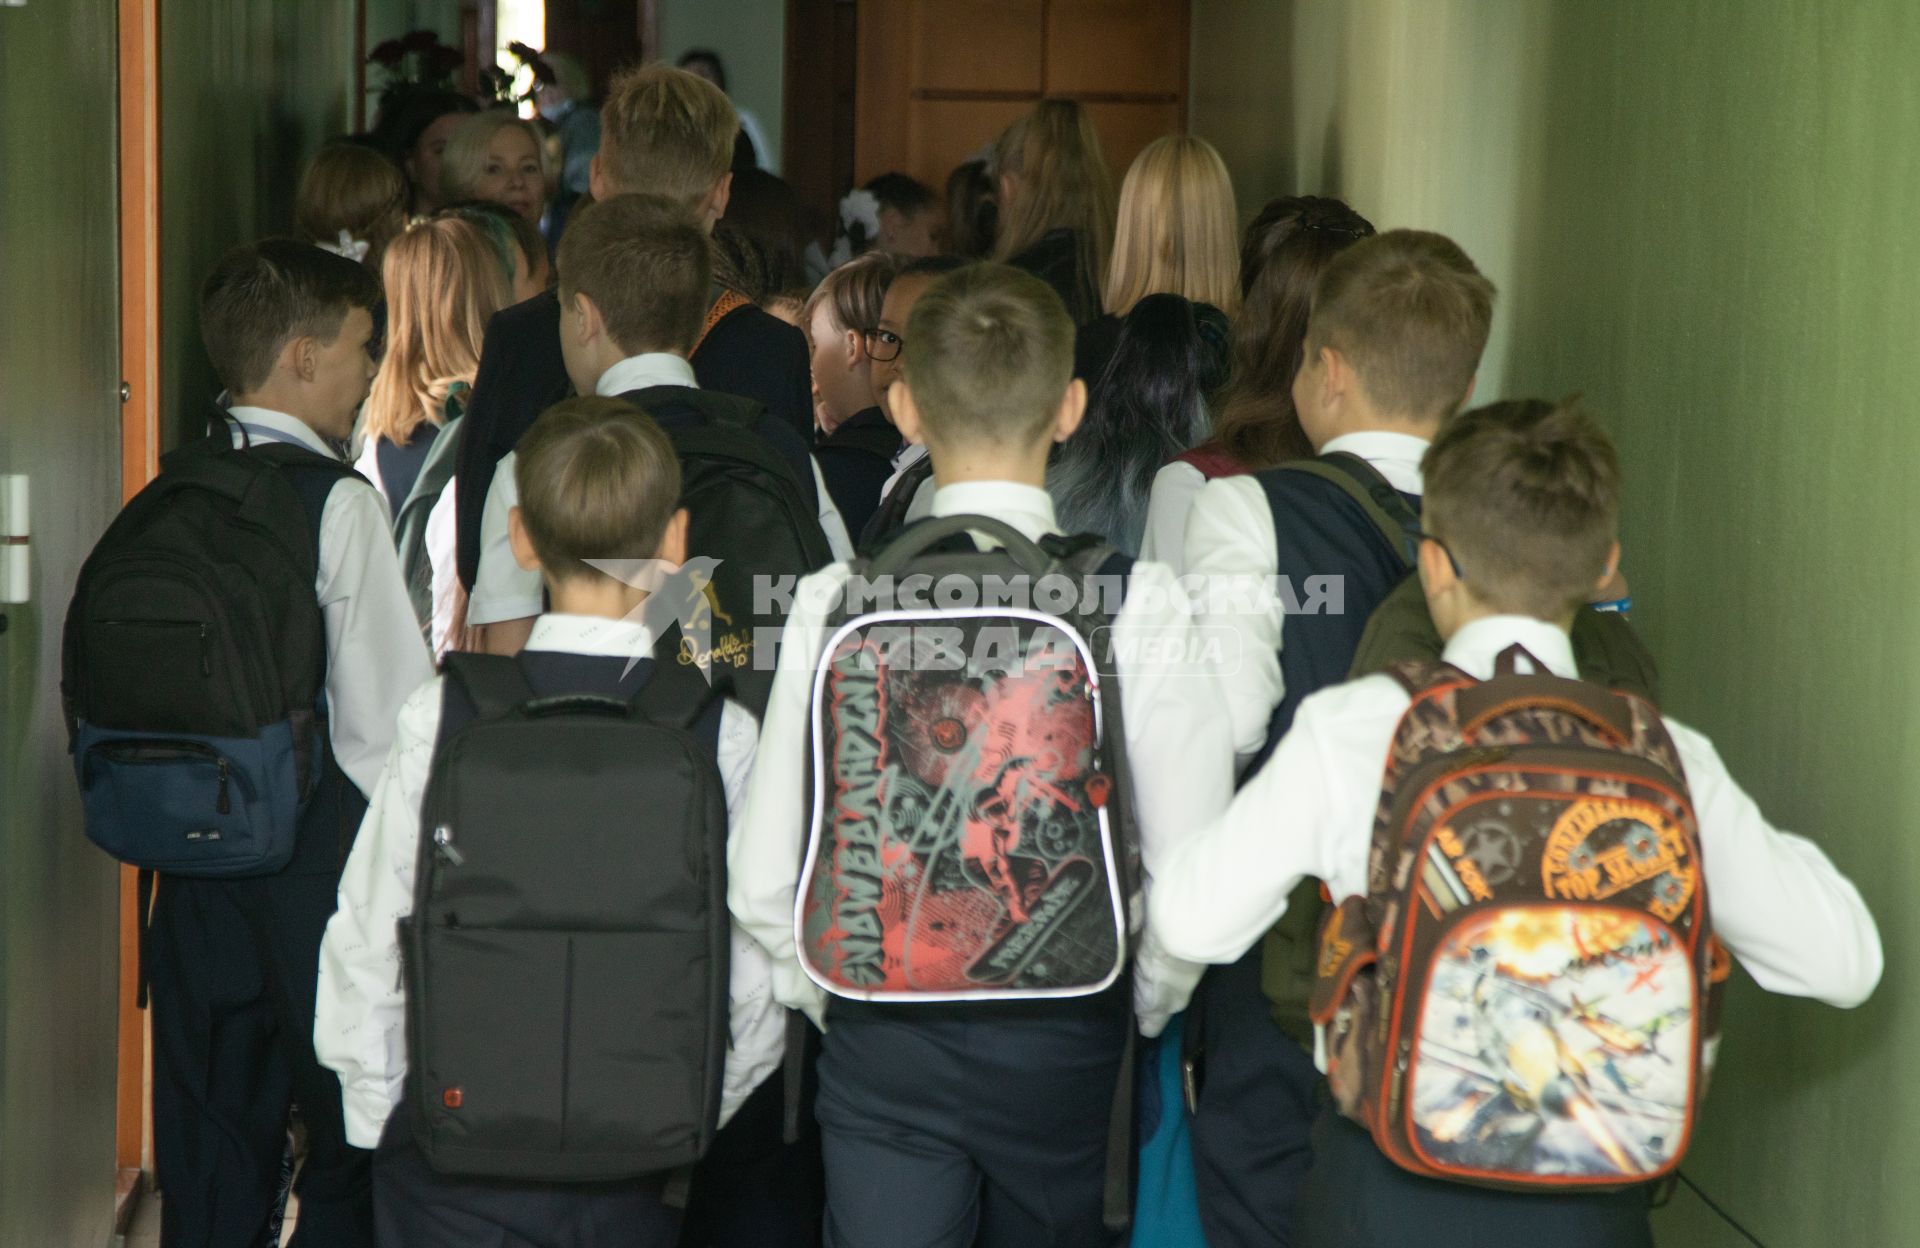 Пермь. Первое сентября. Ученики идут на занятия в школе.